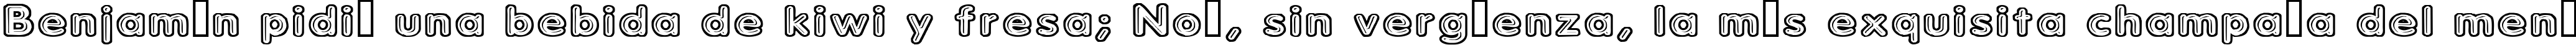 Пример написания шрифтом Parkvane текста на испанском